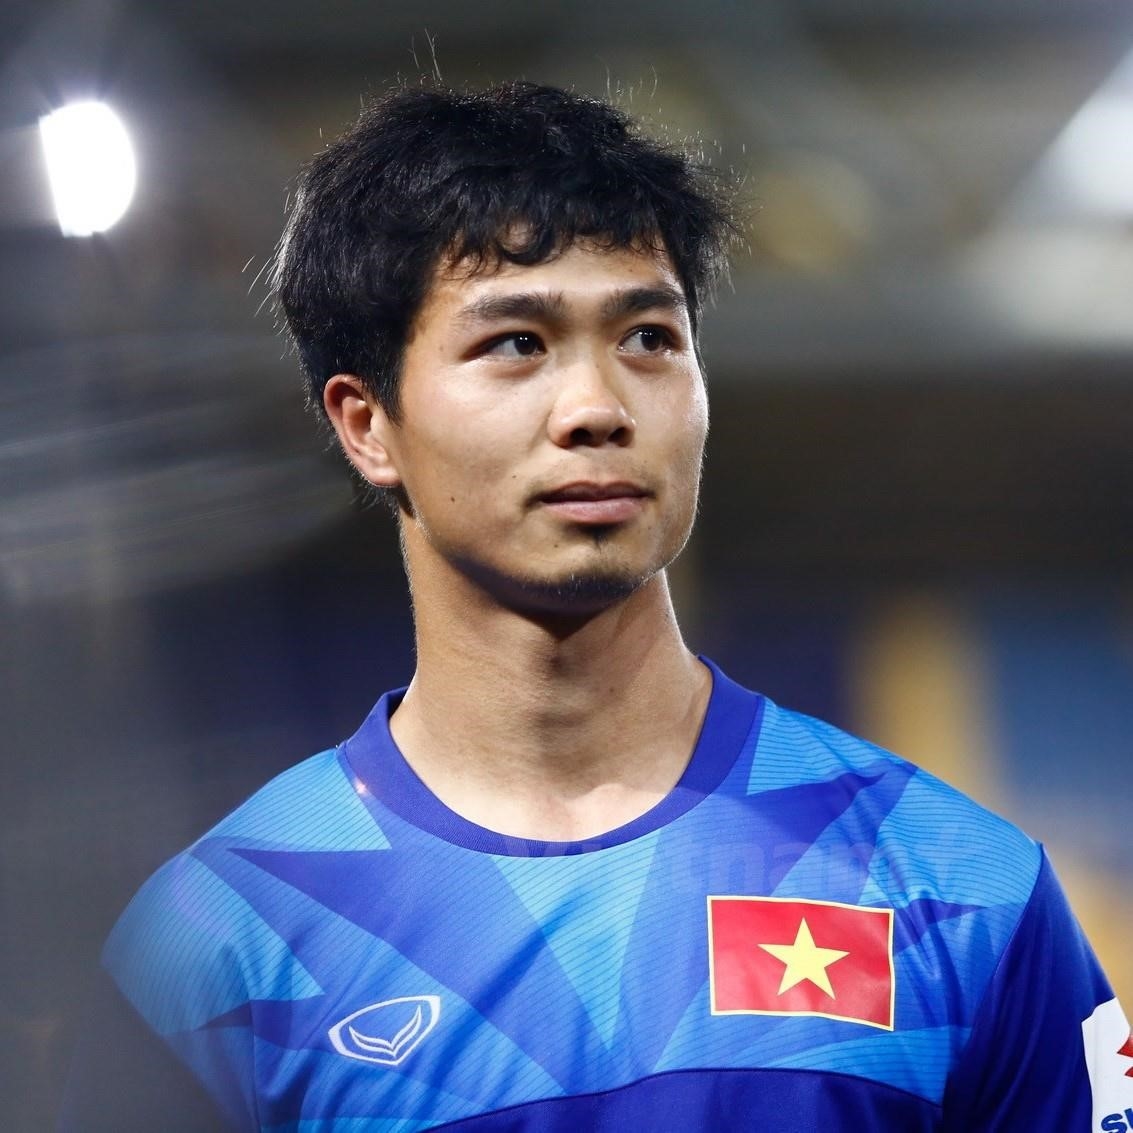 Nguyễn Công Phượng là cầu thủ bóng đá nổi tiếng Việt Nam, từng chơi cho các đội bóng lớn trong nước và quốc tế như Hoàng Anh Gia Lai, Incheon United, Buriram United và Sint-Truidense. Anh được coi là một trong những tài năng trẻ triển vọng của bóng đá Việt Nam.